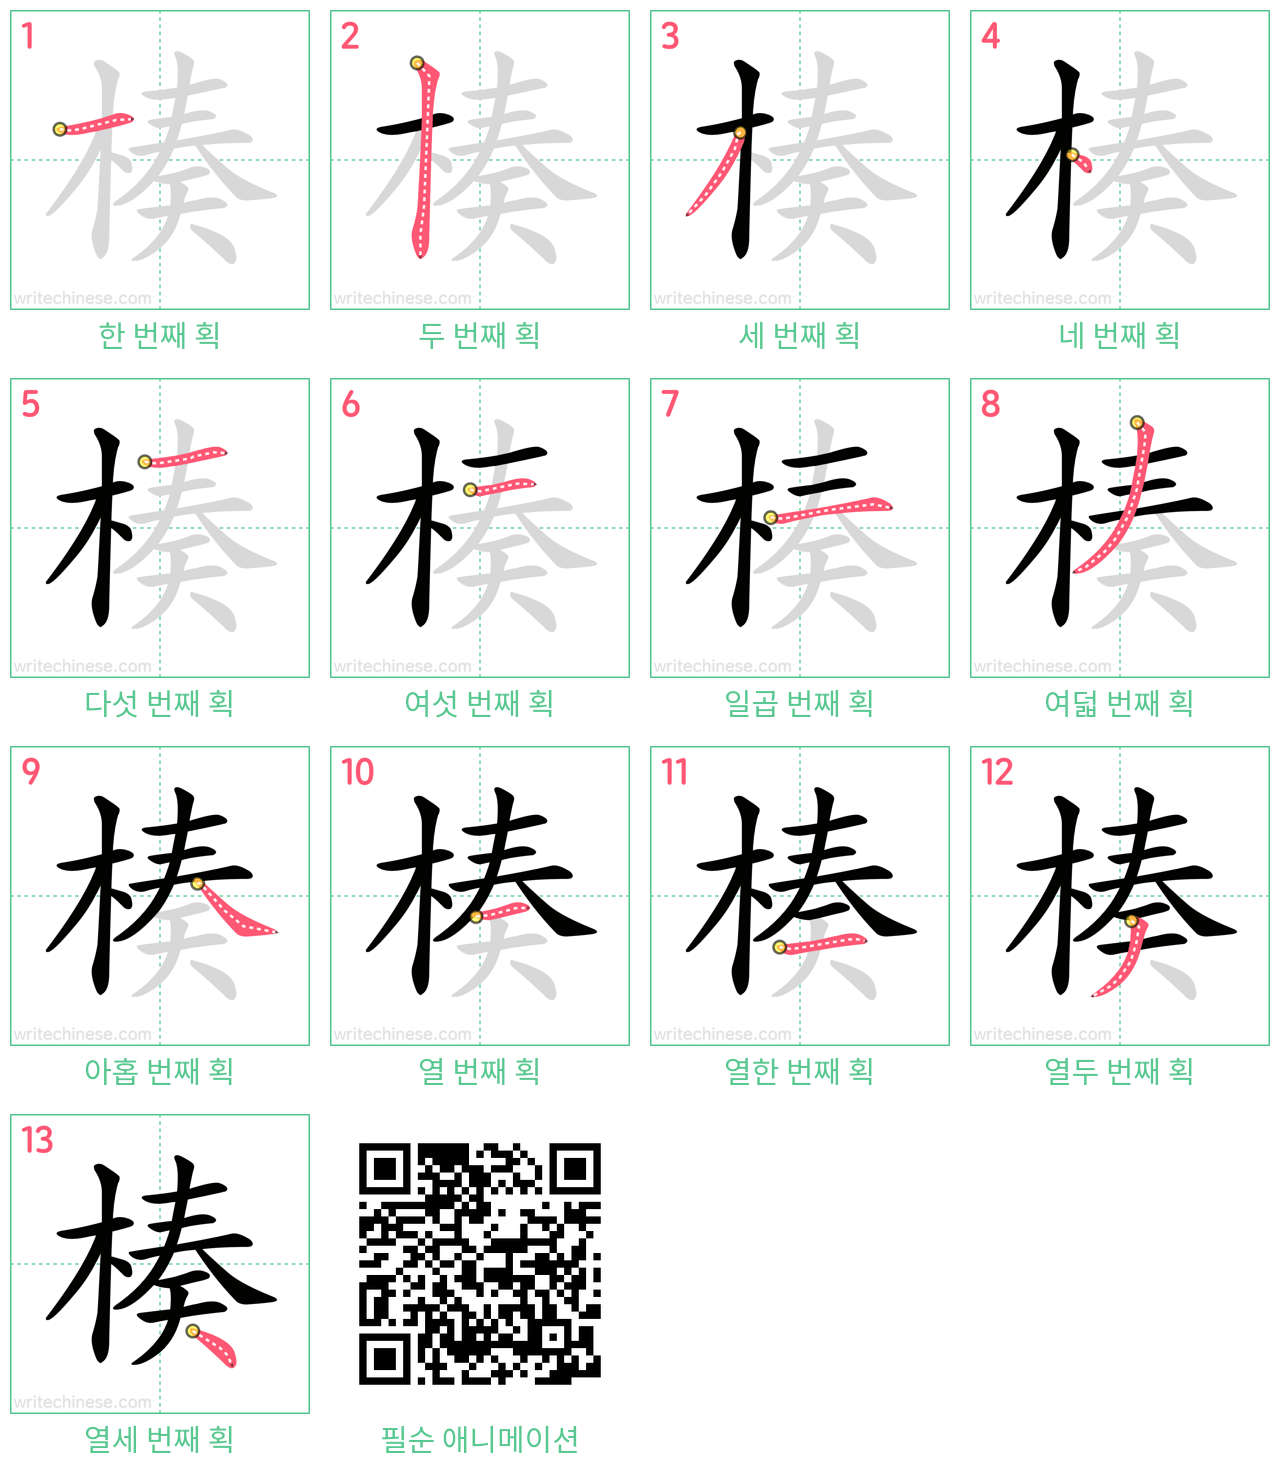 楱 step-by-step stroke order diagrams